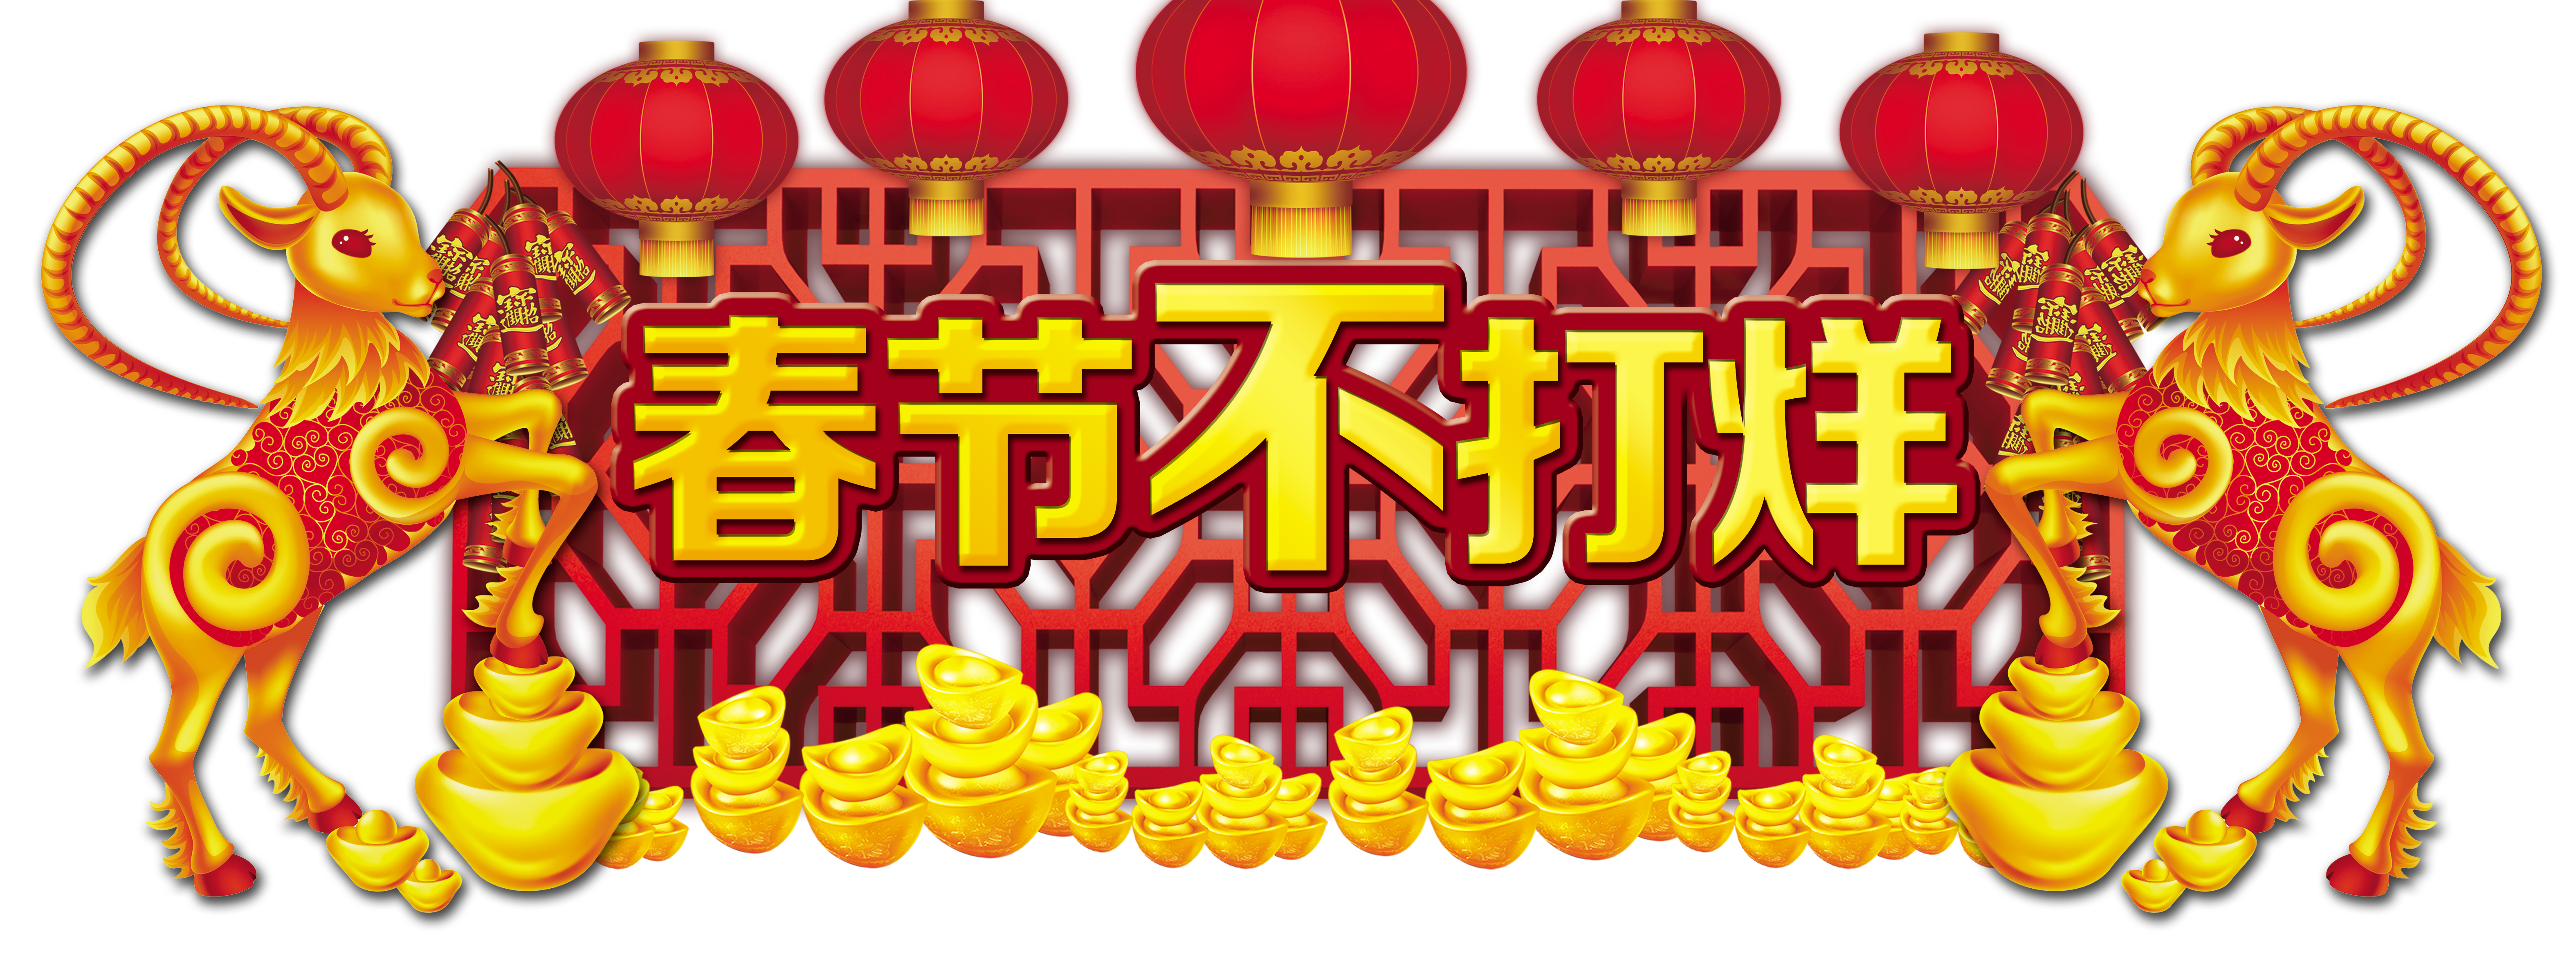 O Ano Novo Chinês e o Festival da Primavera não estão fechados